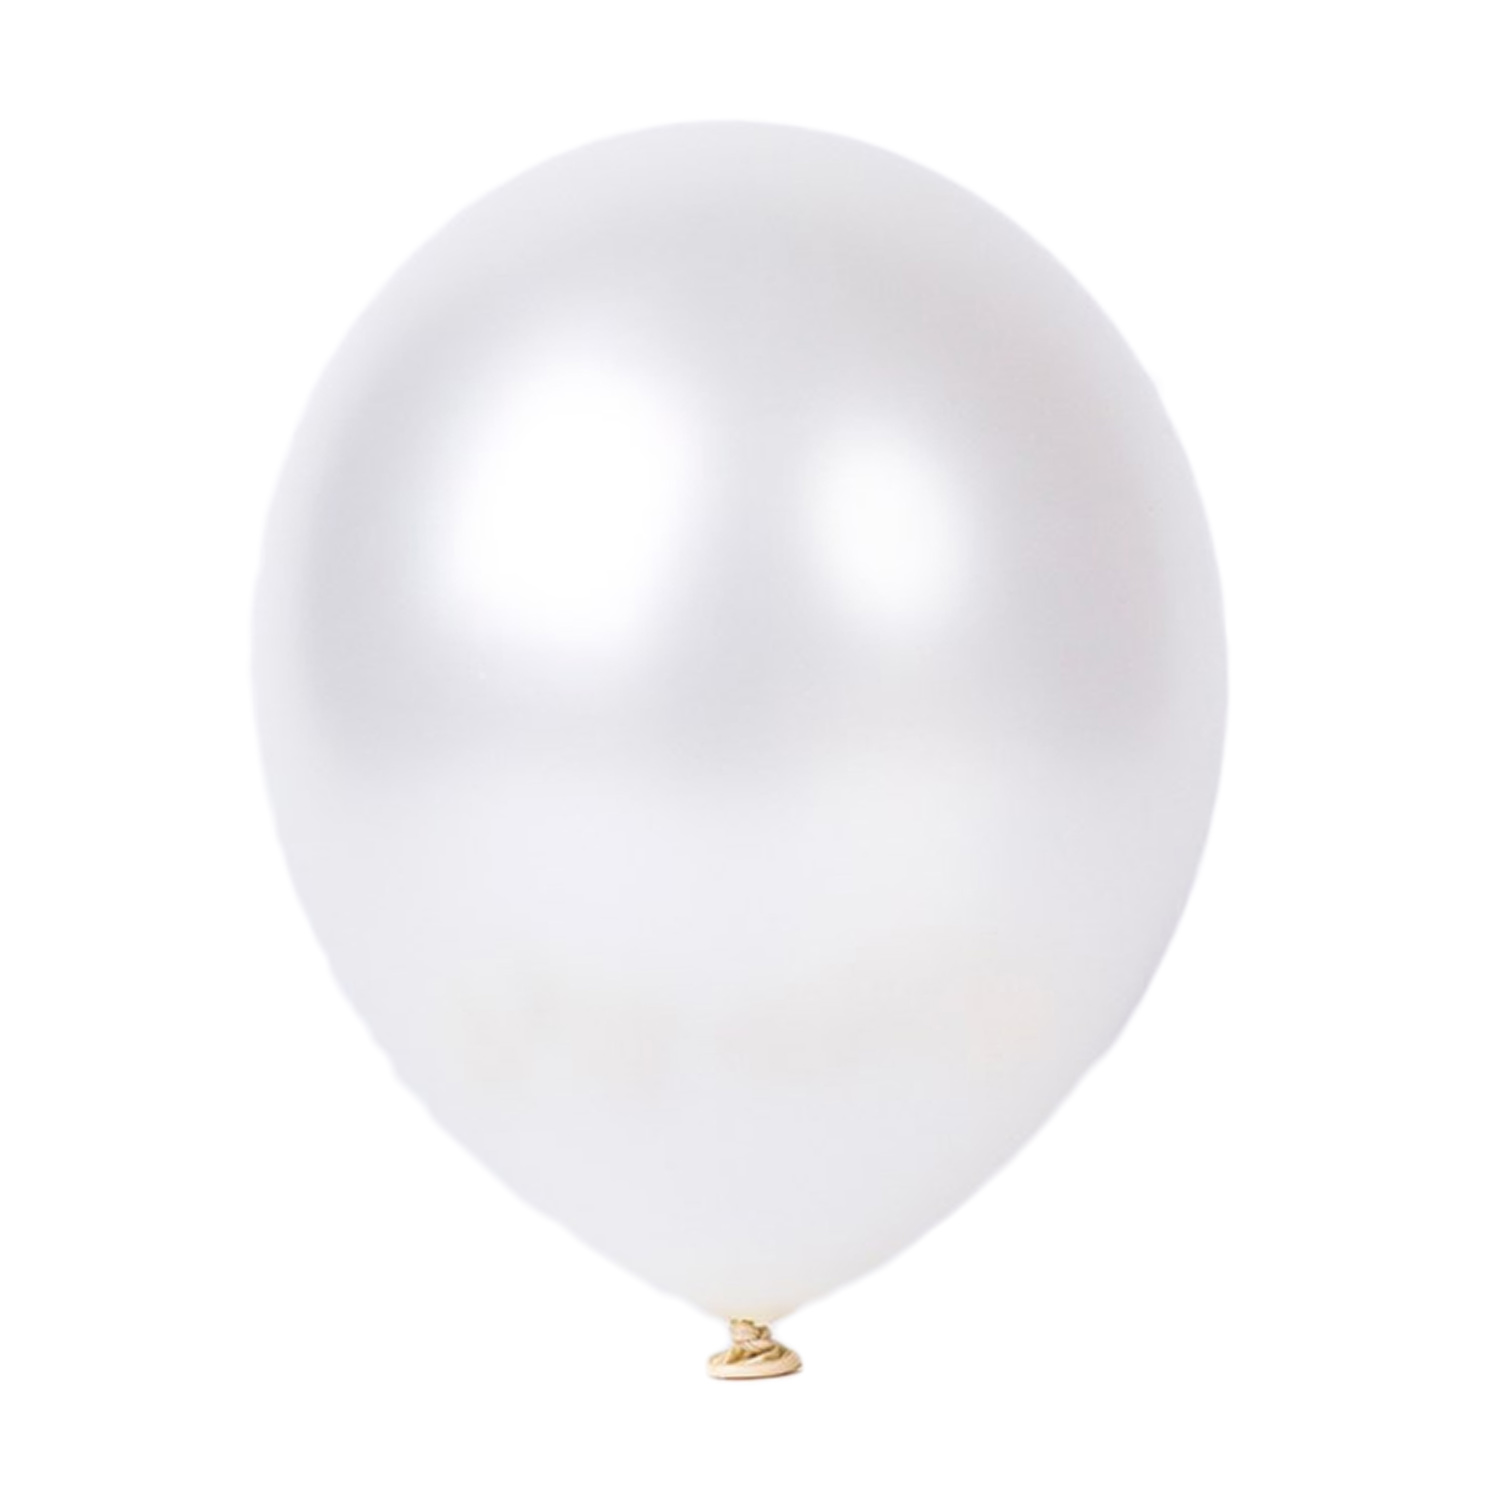 25er SET - Latex Luftballon - 12inch - Weiß - Metallic (glänzend)